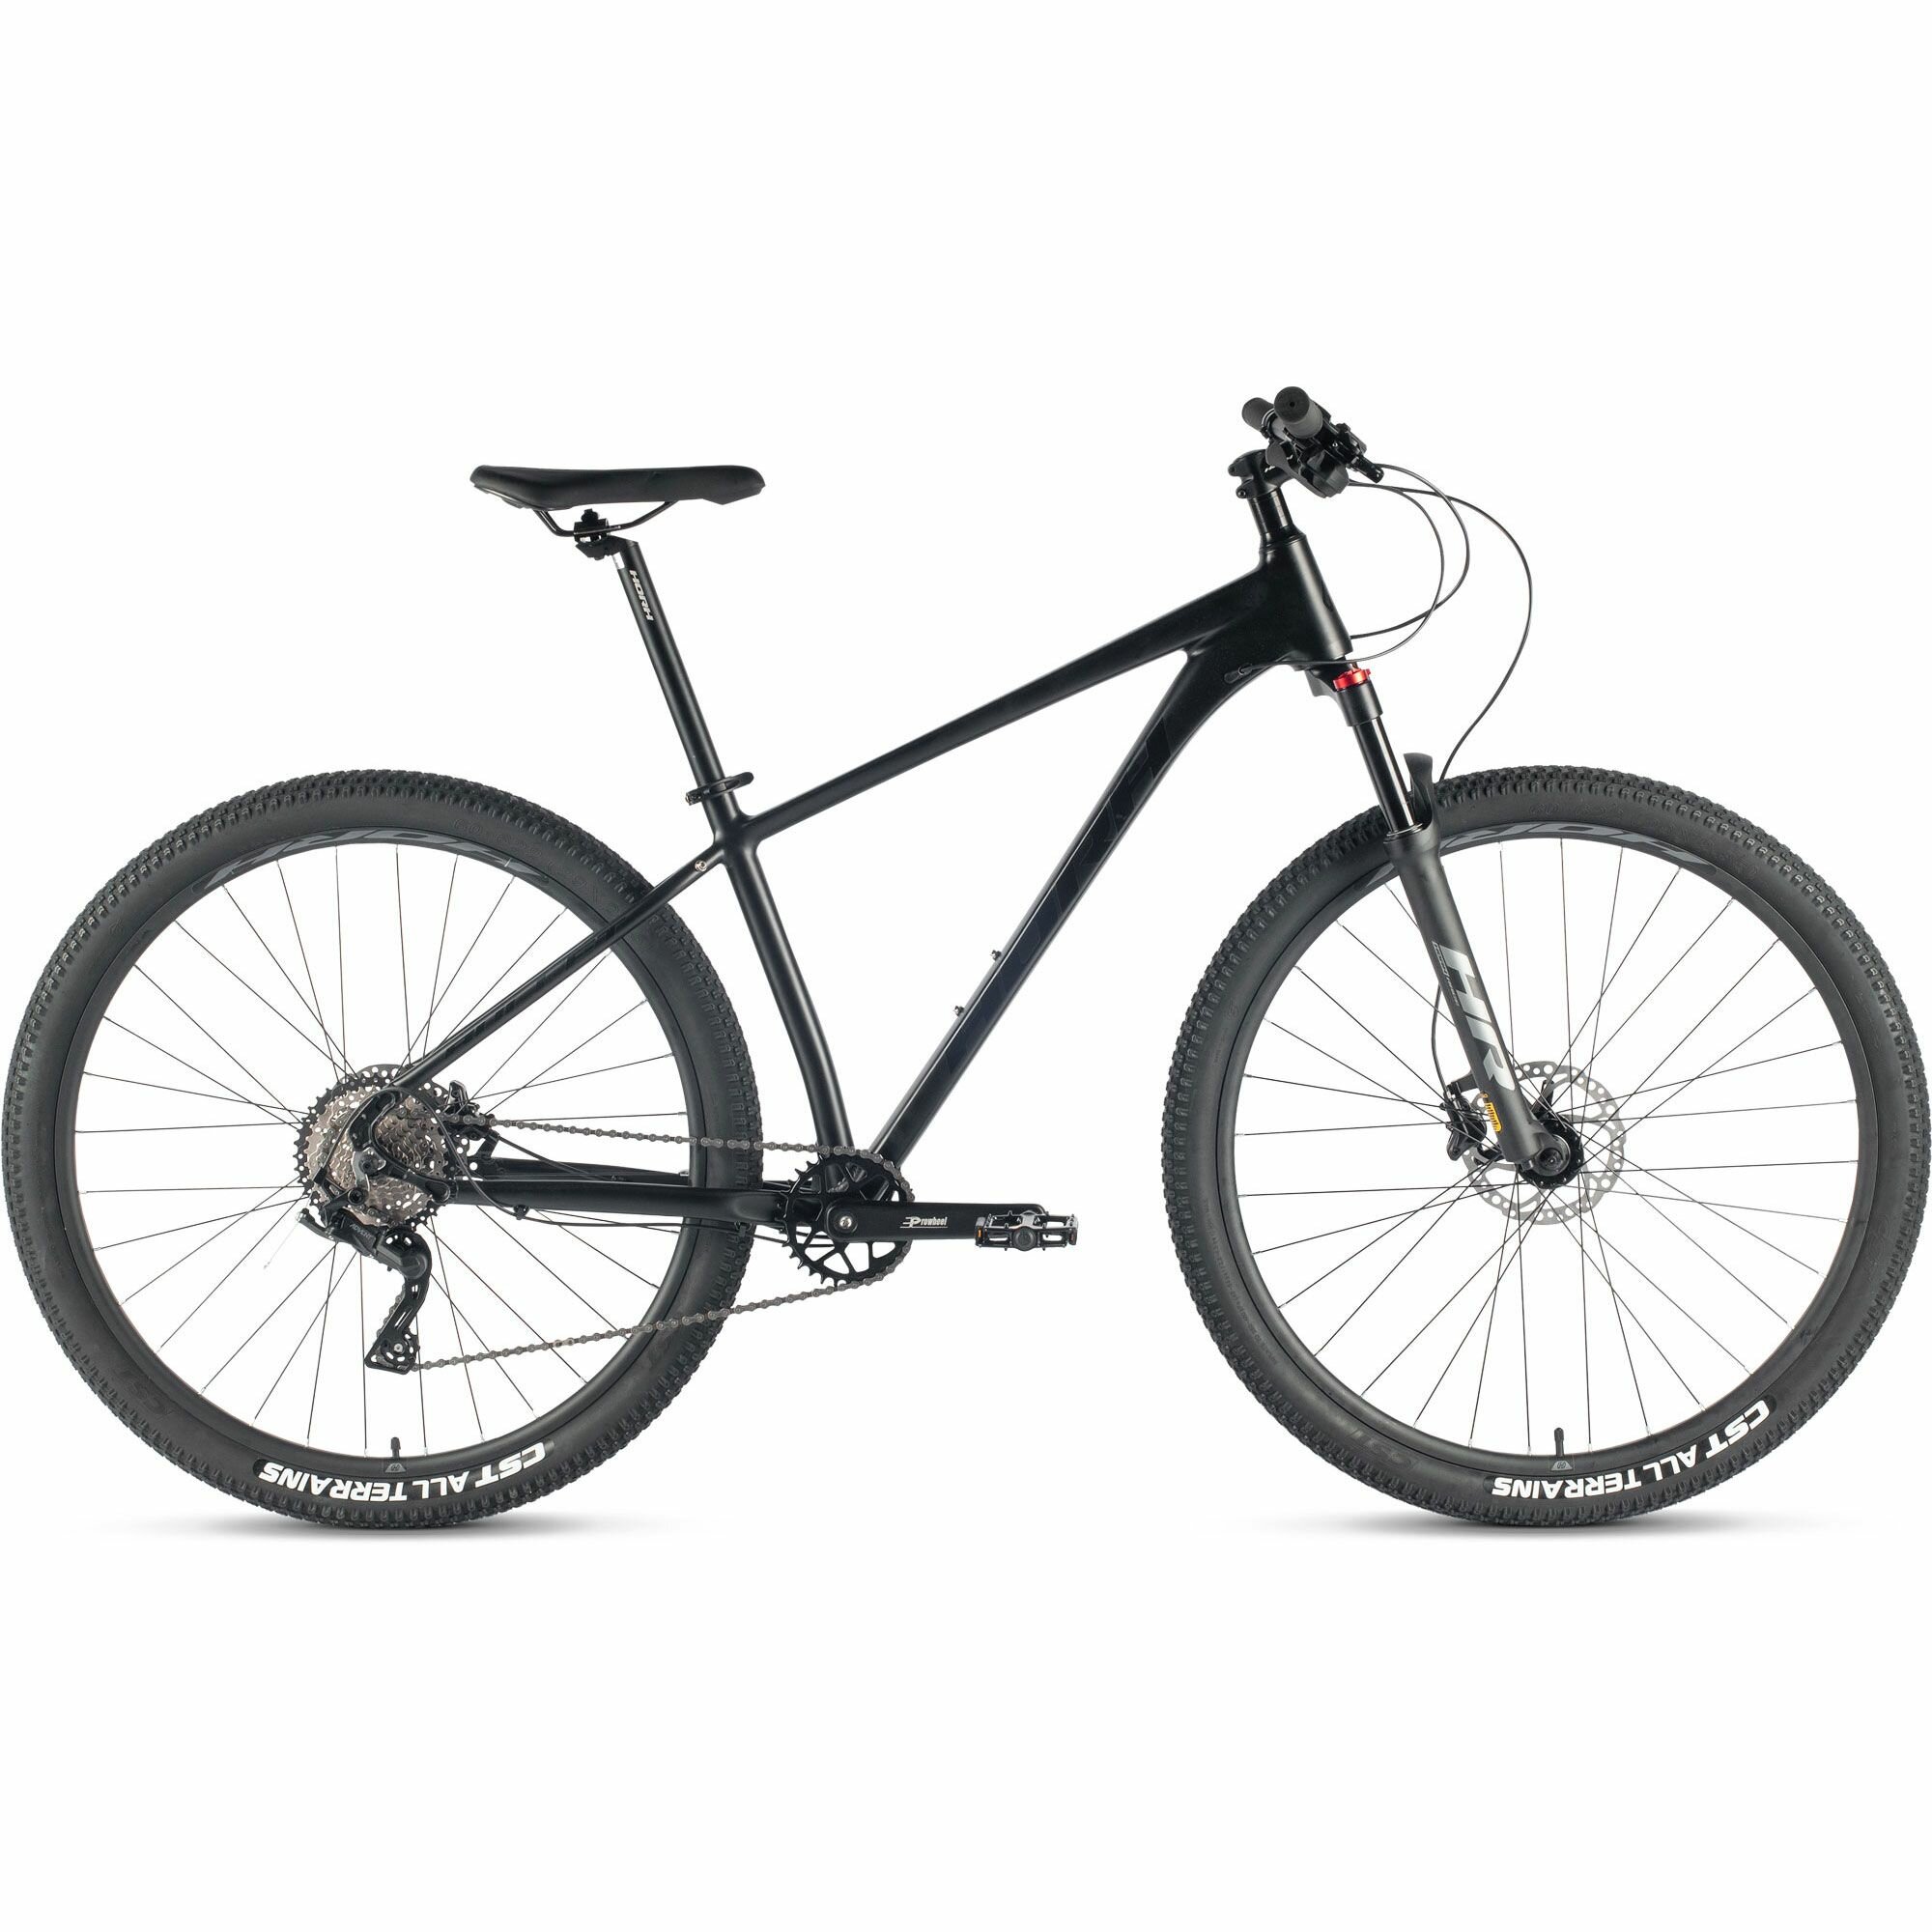 Велосипед горный HORH BULLET BHD 9.1 29" (2024), хардтейл, взрослый, мужской, алюминиевая рама, оборудование Microshift Advent, 9 скоростей, дисковые гидравлические тормоза, цвет Black, черный цвет, размер рамы 17", для роста 170-180 см